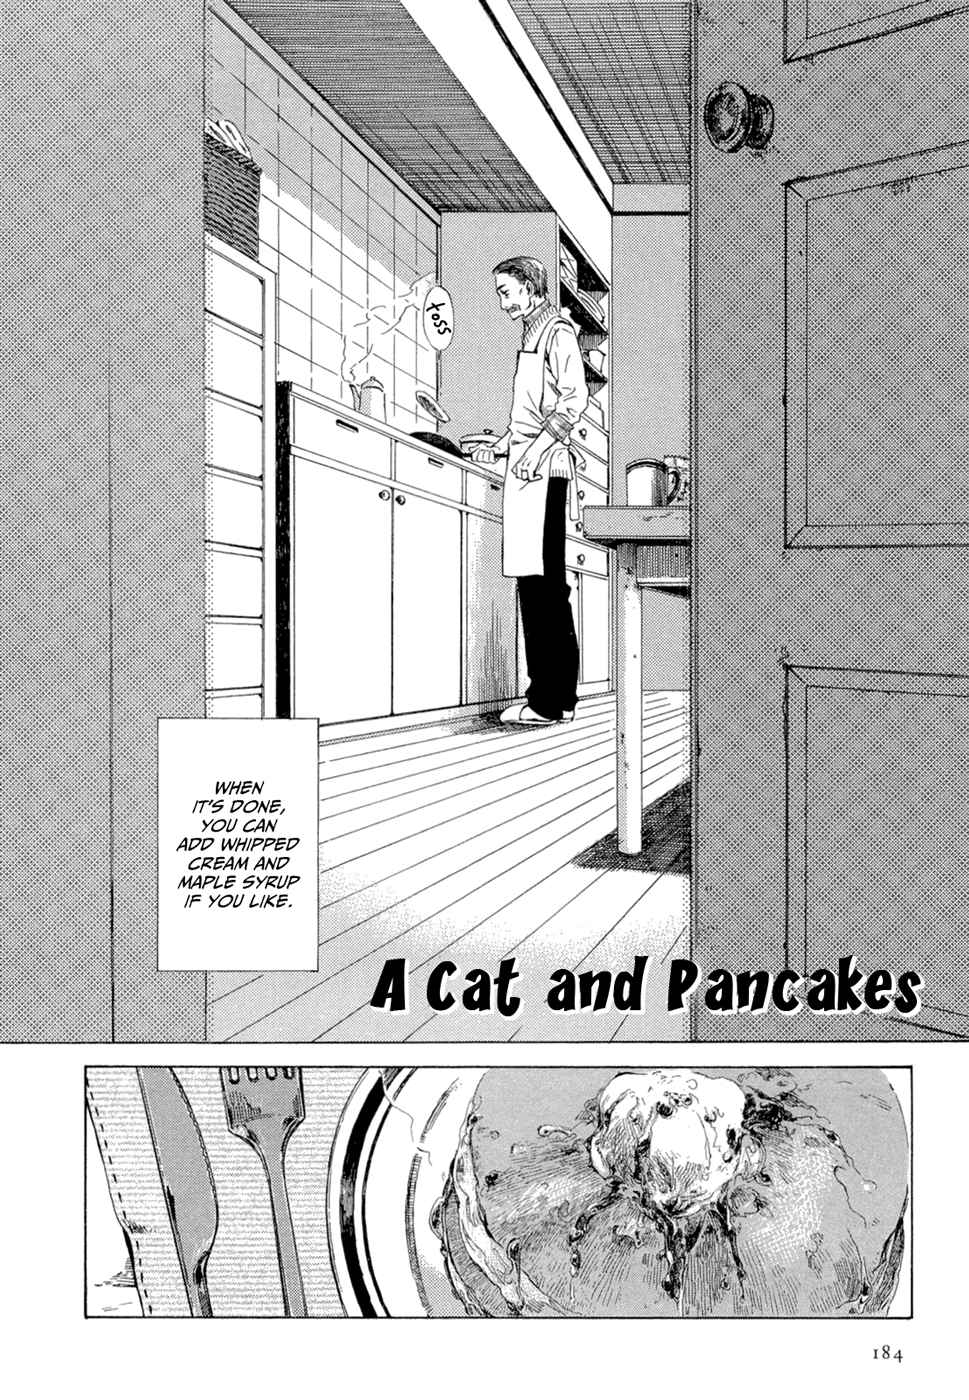 Tsukiyo no Toratsugumi Vol. 1 Ch. 8 A Cat and Pancakes